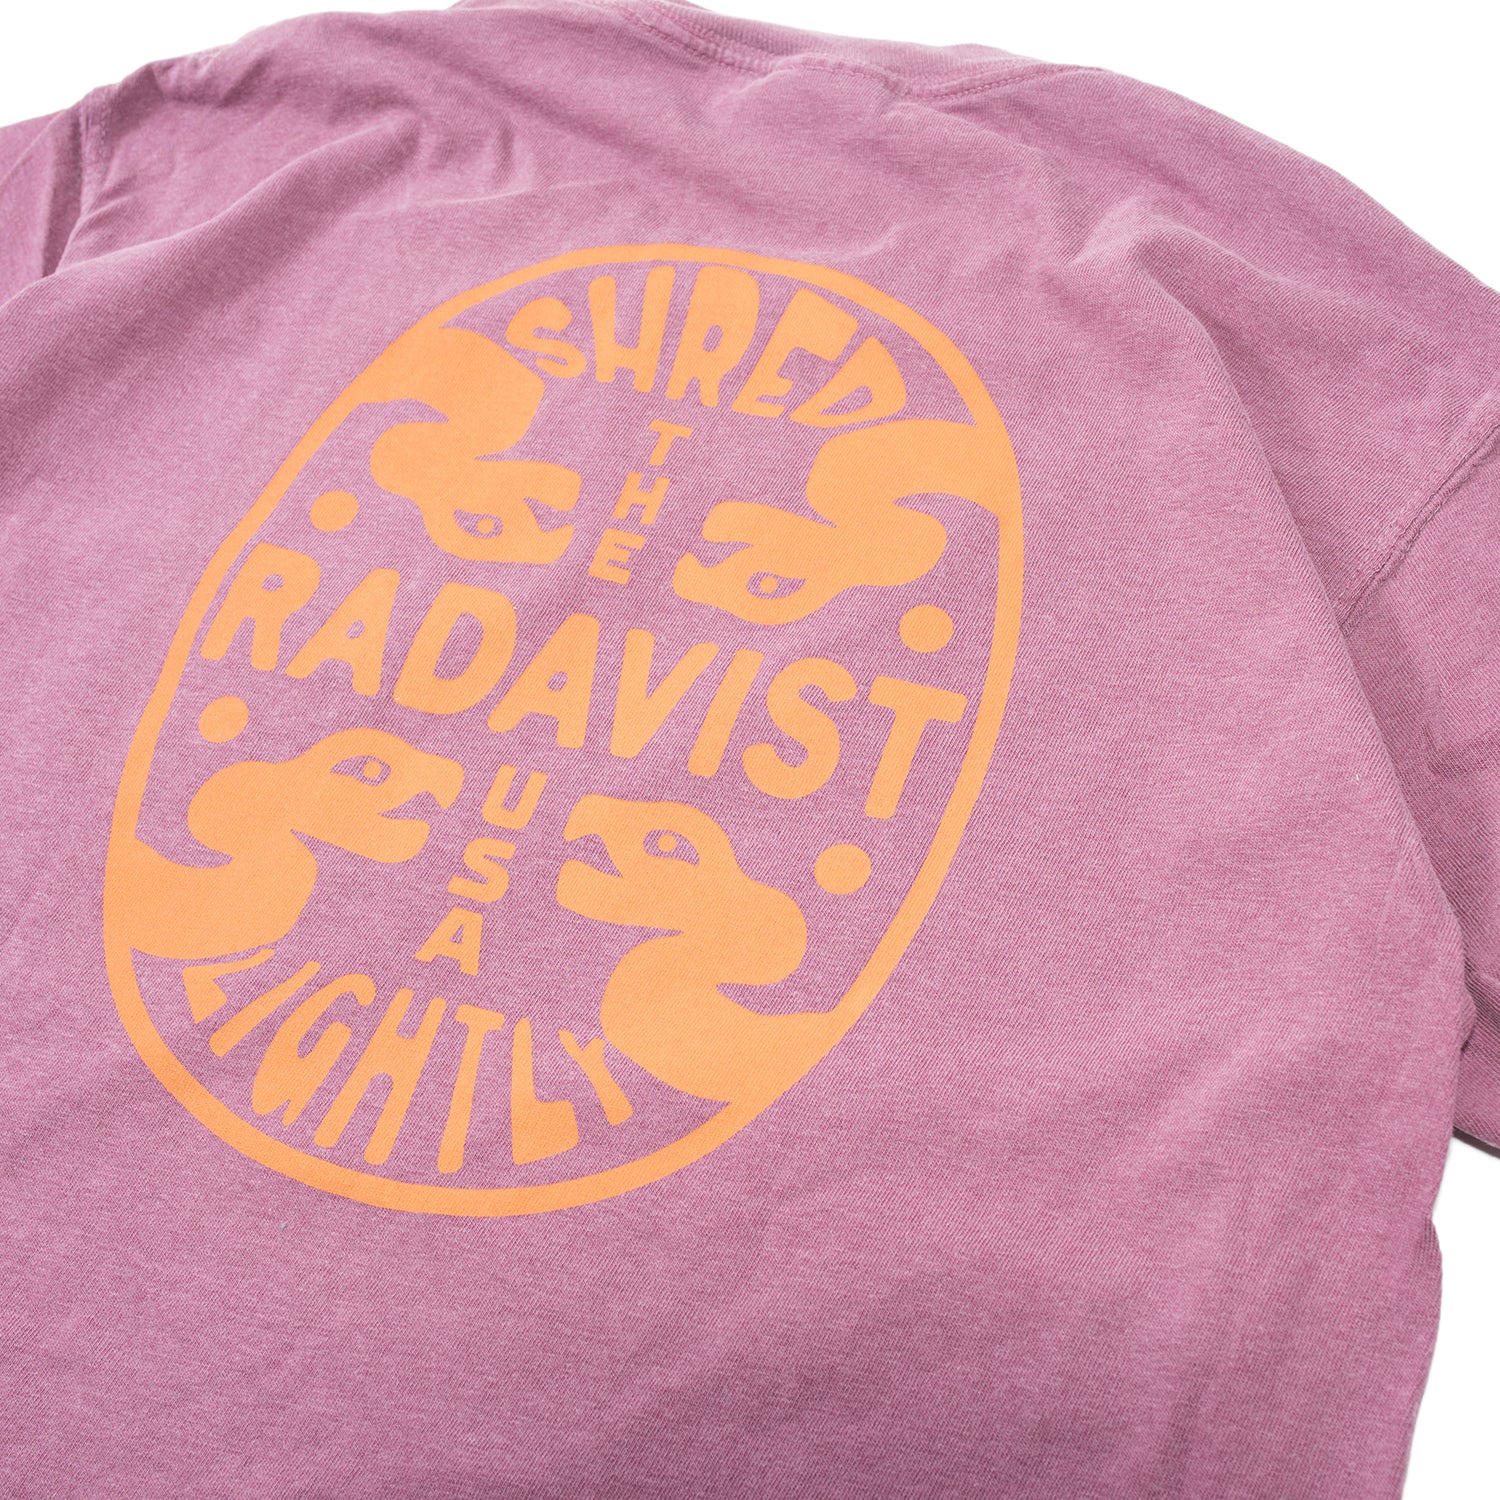 THE RADAVIST T-Shirt